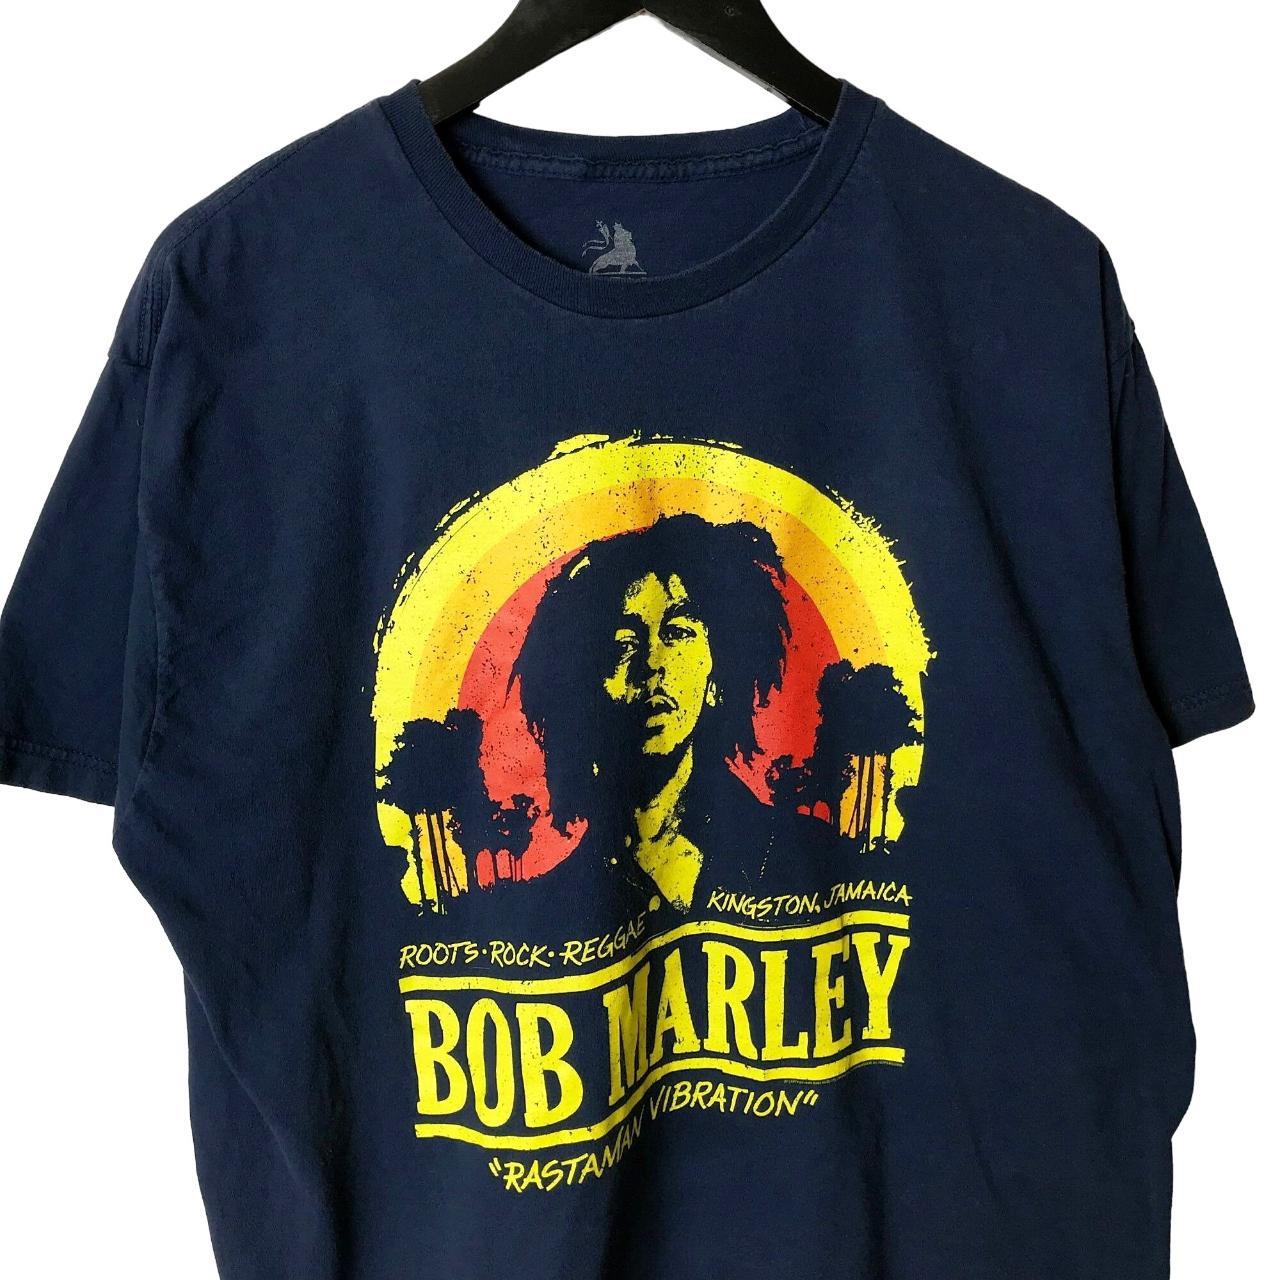 Bob Marley Rastaman Vibration T Shirt Reggae Artist... - Depop